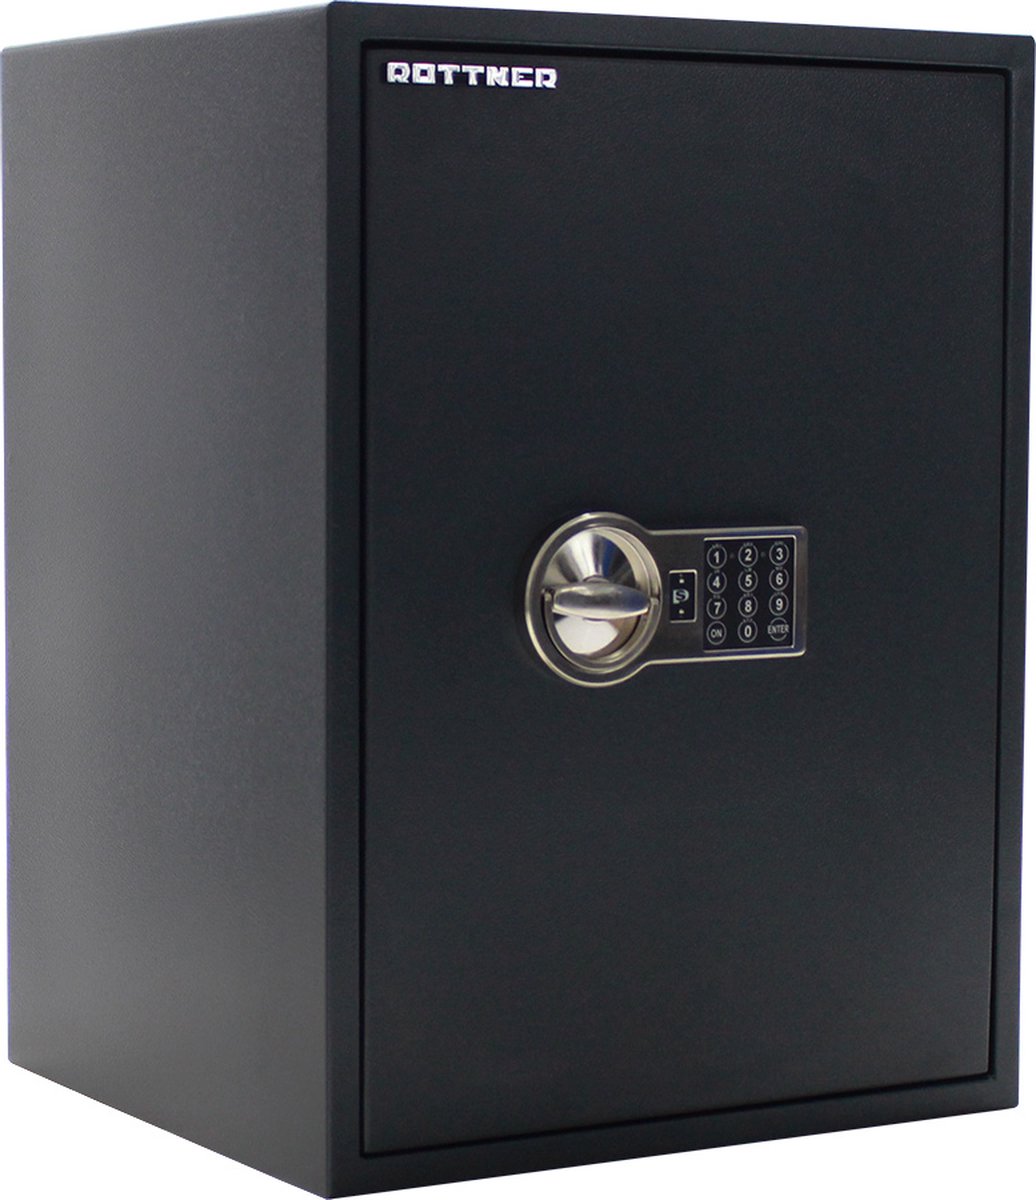 Rottner Meubelkluis PowerSafe 600 IT |Elektronisch slot |60x44,5x40cm|48kg|Inbraakwerend:S2 gecertificeerd volgens EN 14450 |